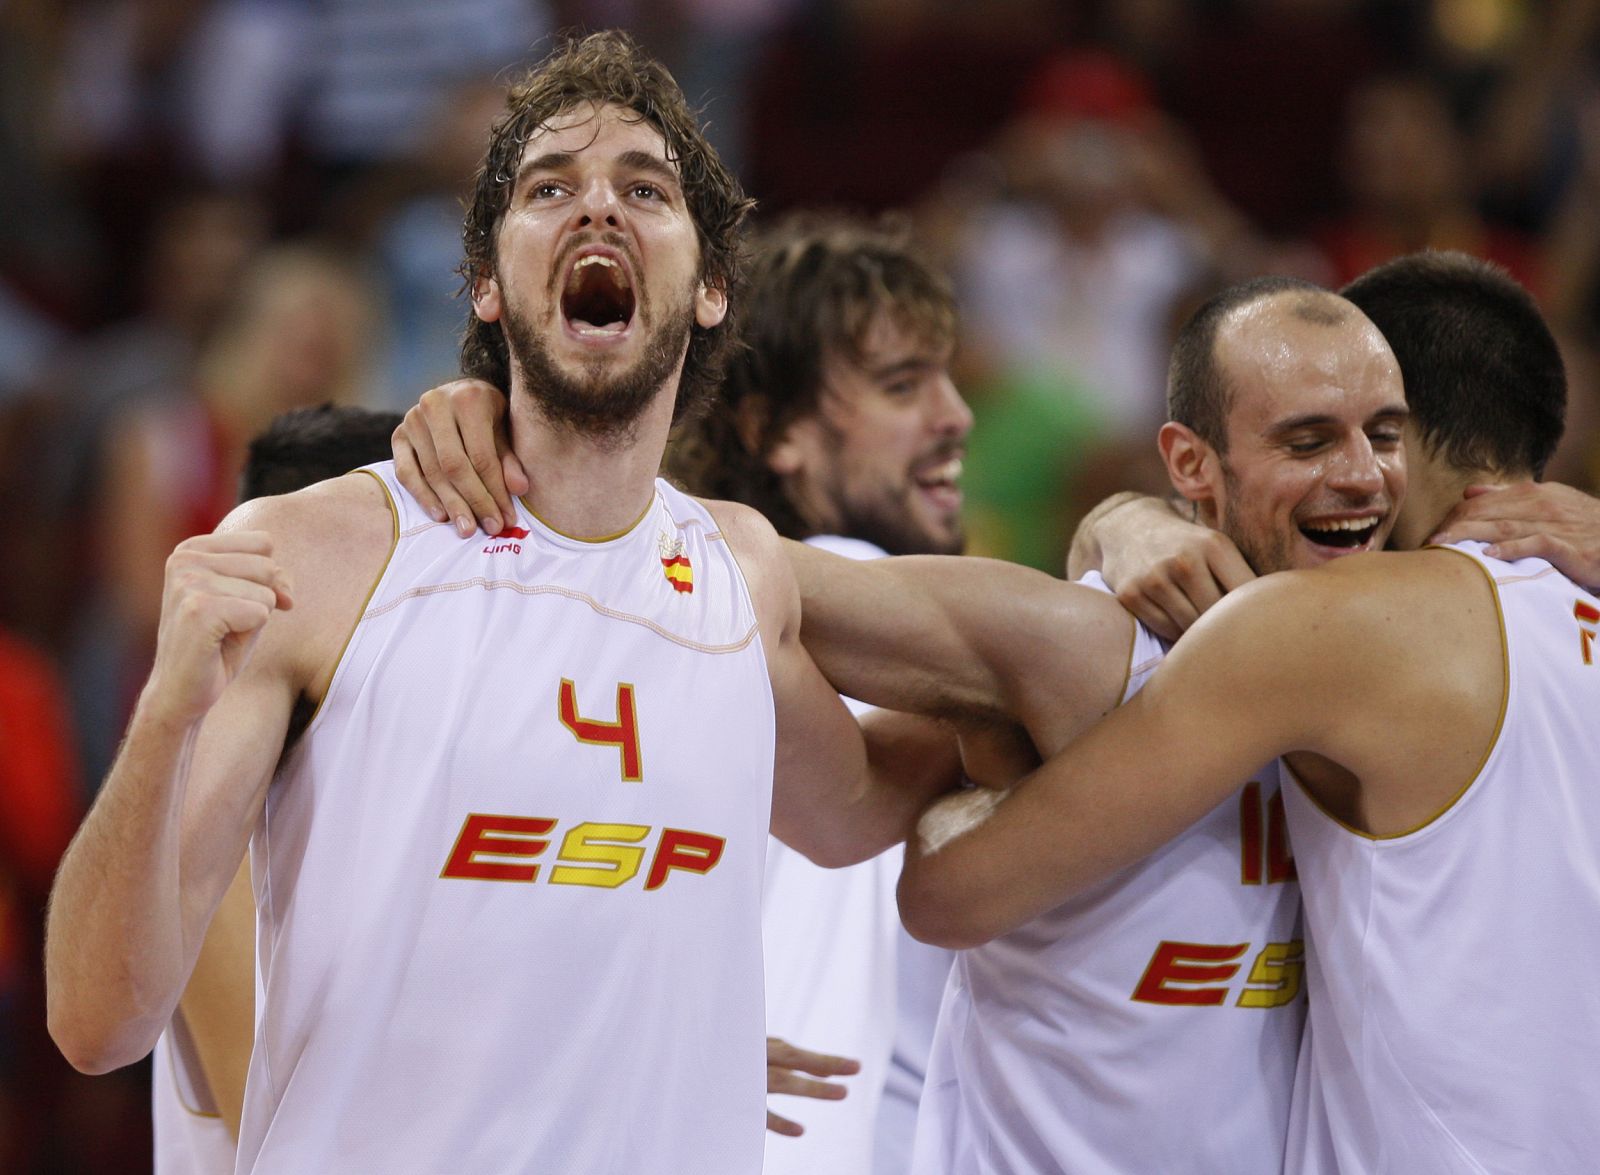 La selección española de baloncesto es favorita para llevarse el Eurobasket.